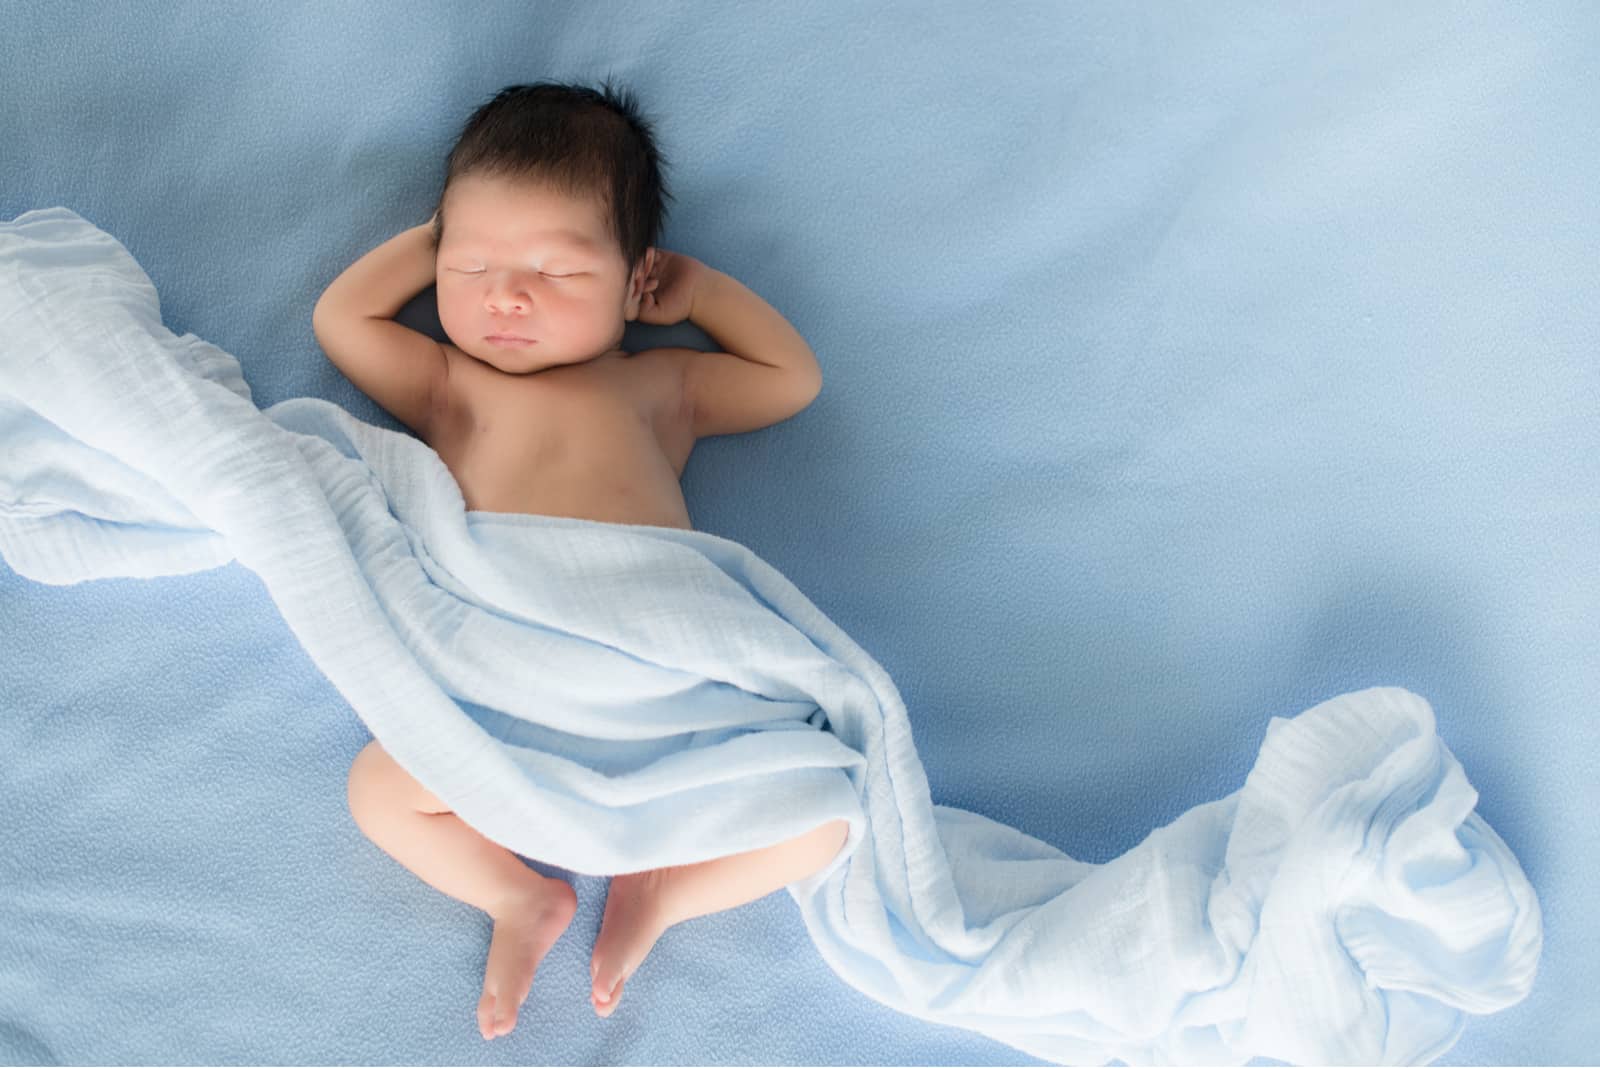 nouveau-né allongé sur une couverture bleue